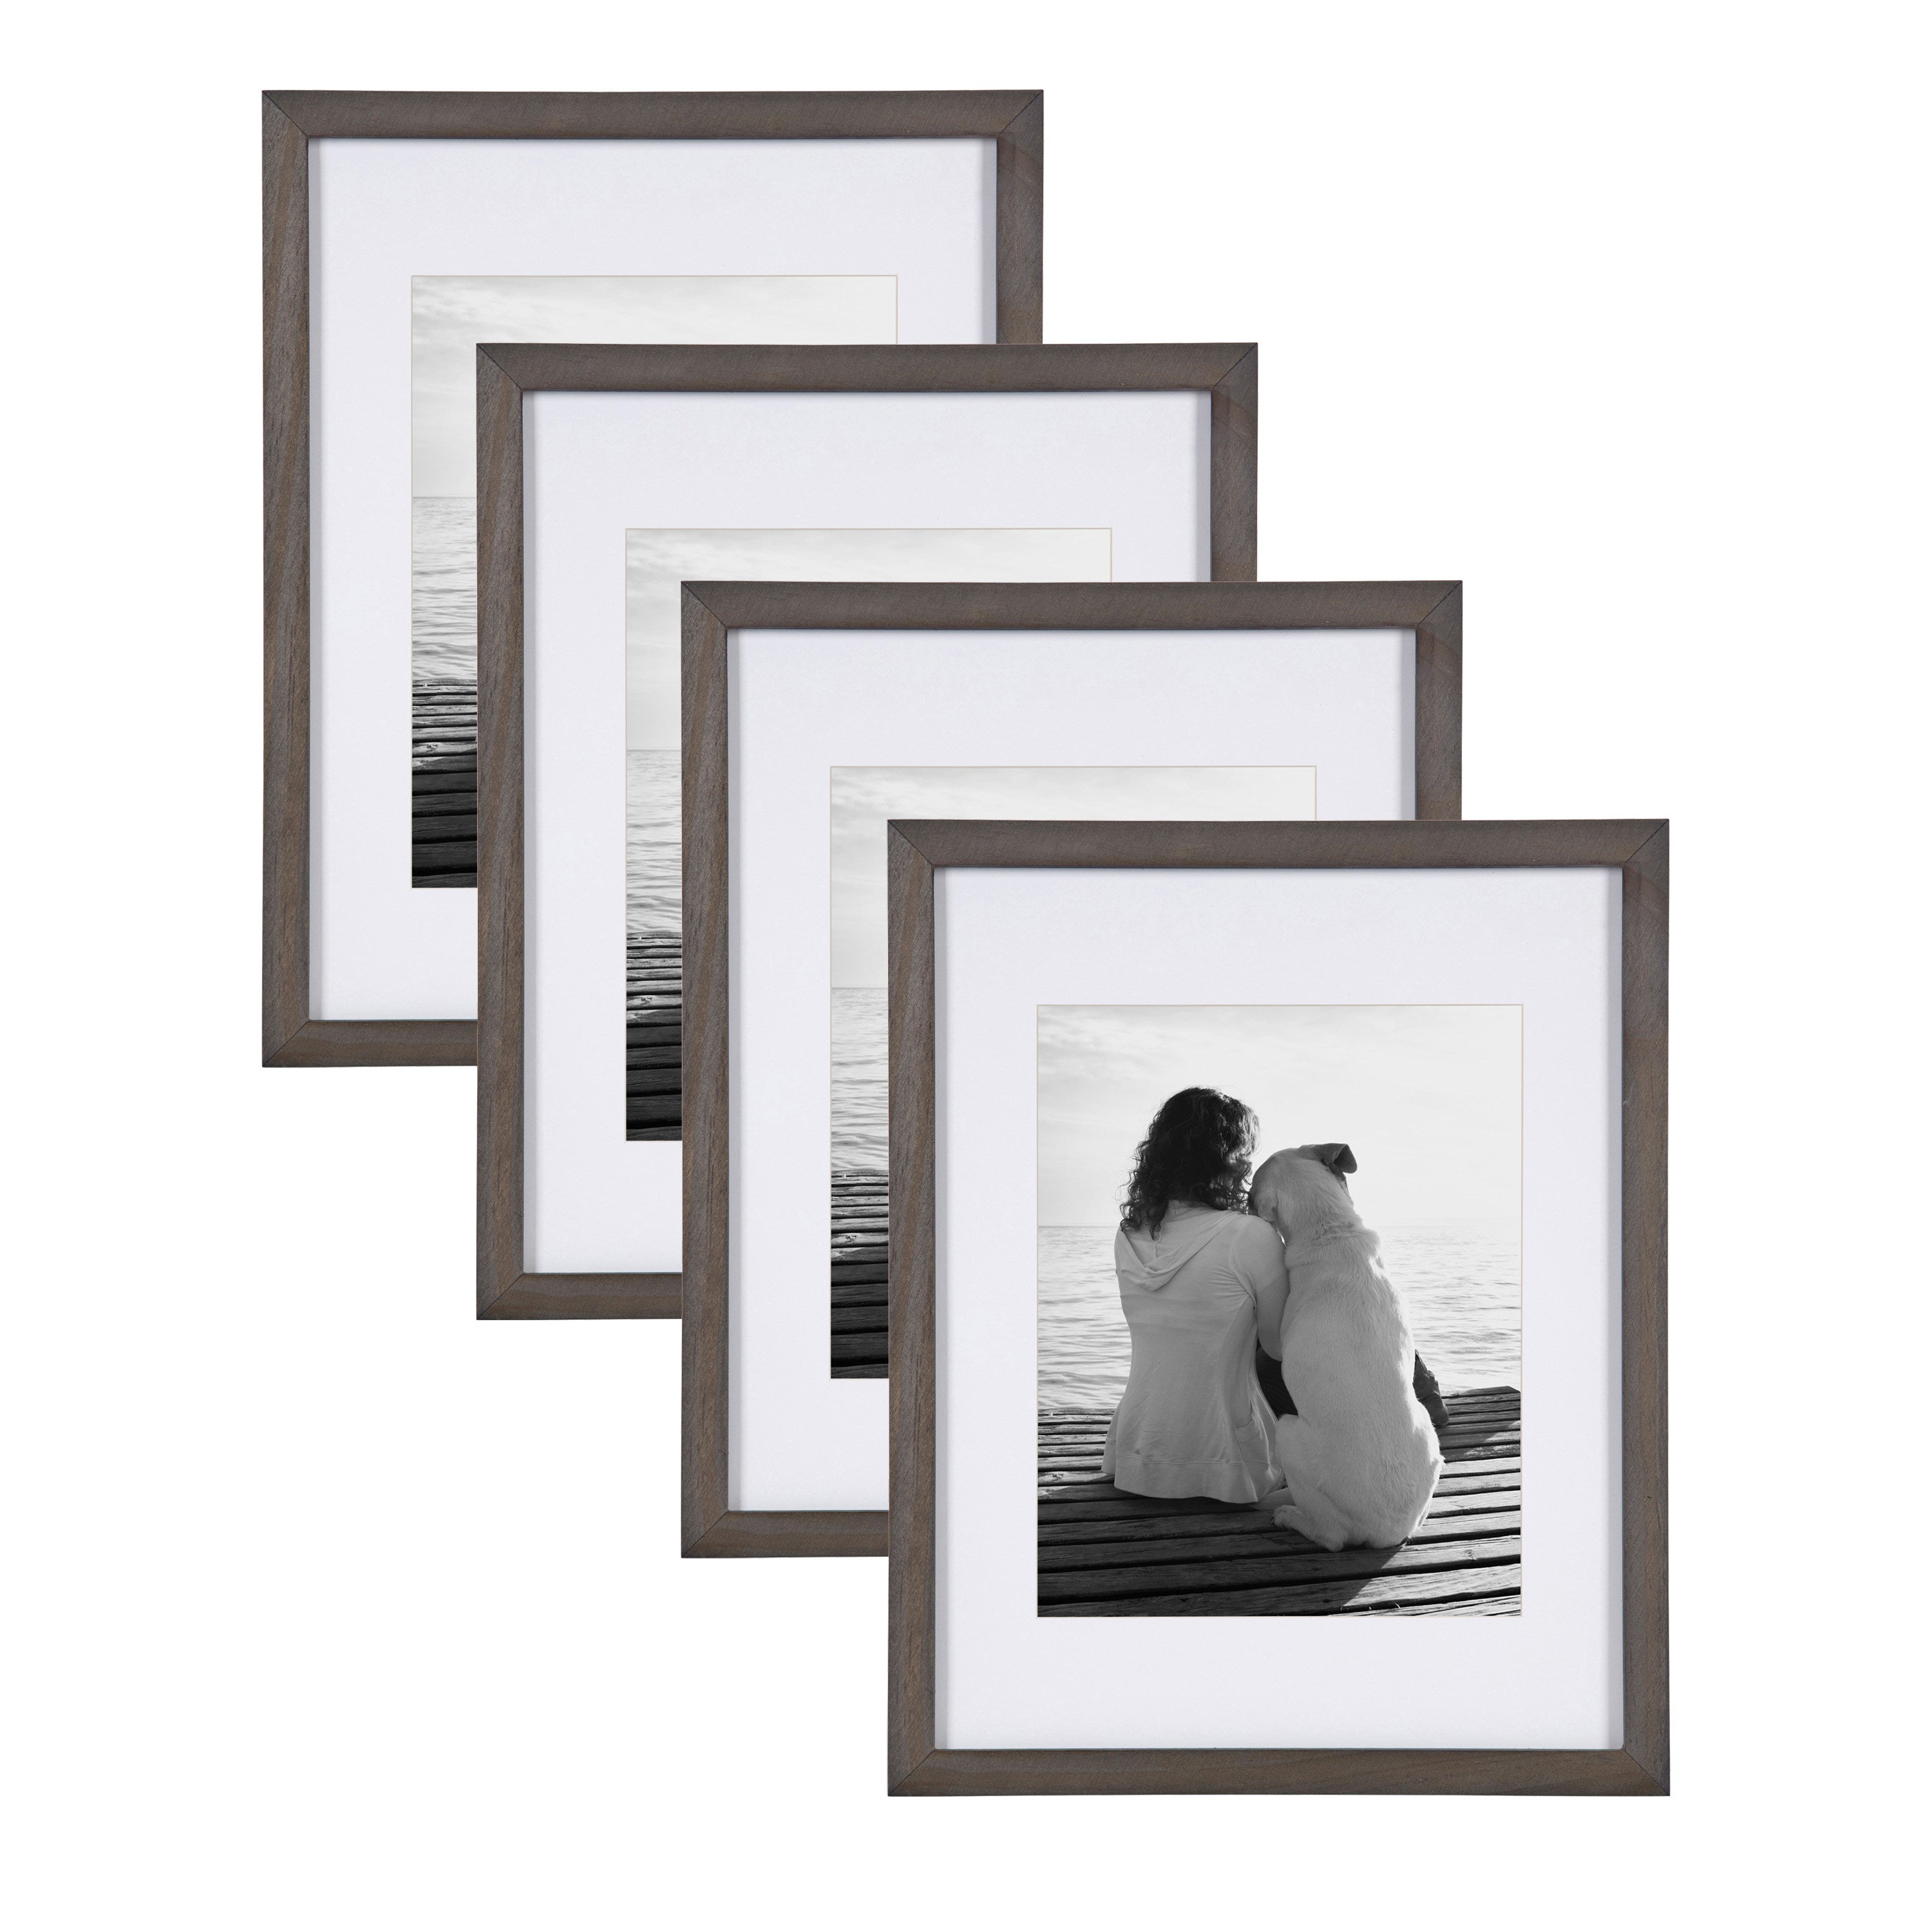 White Beaded Tabletop Frame, 4x6